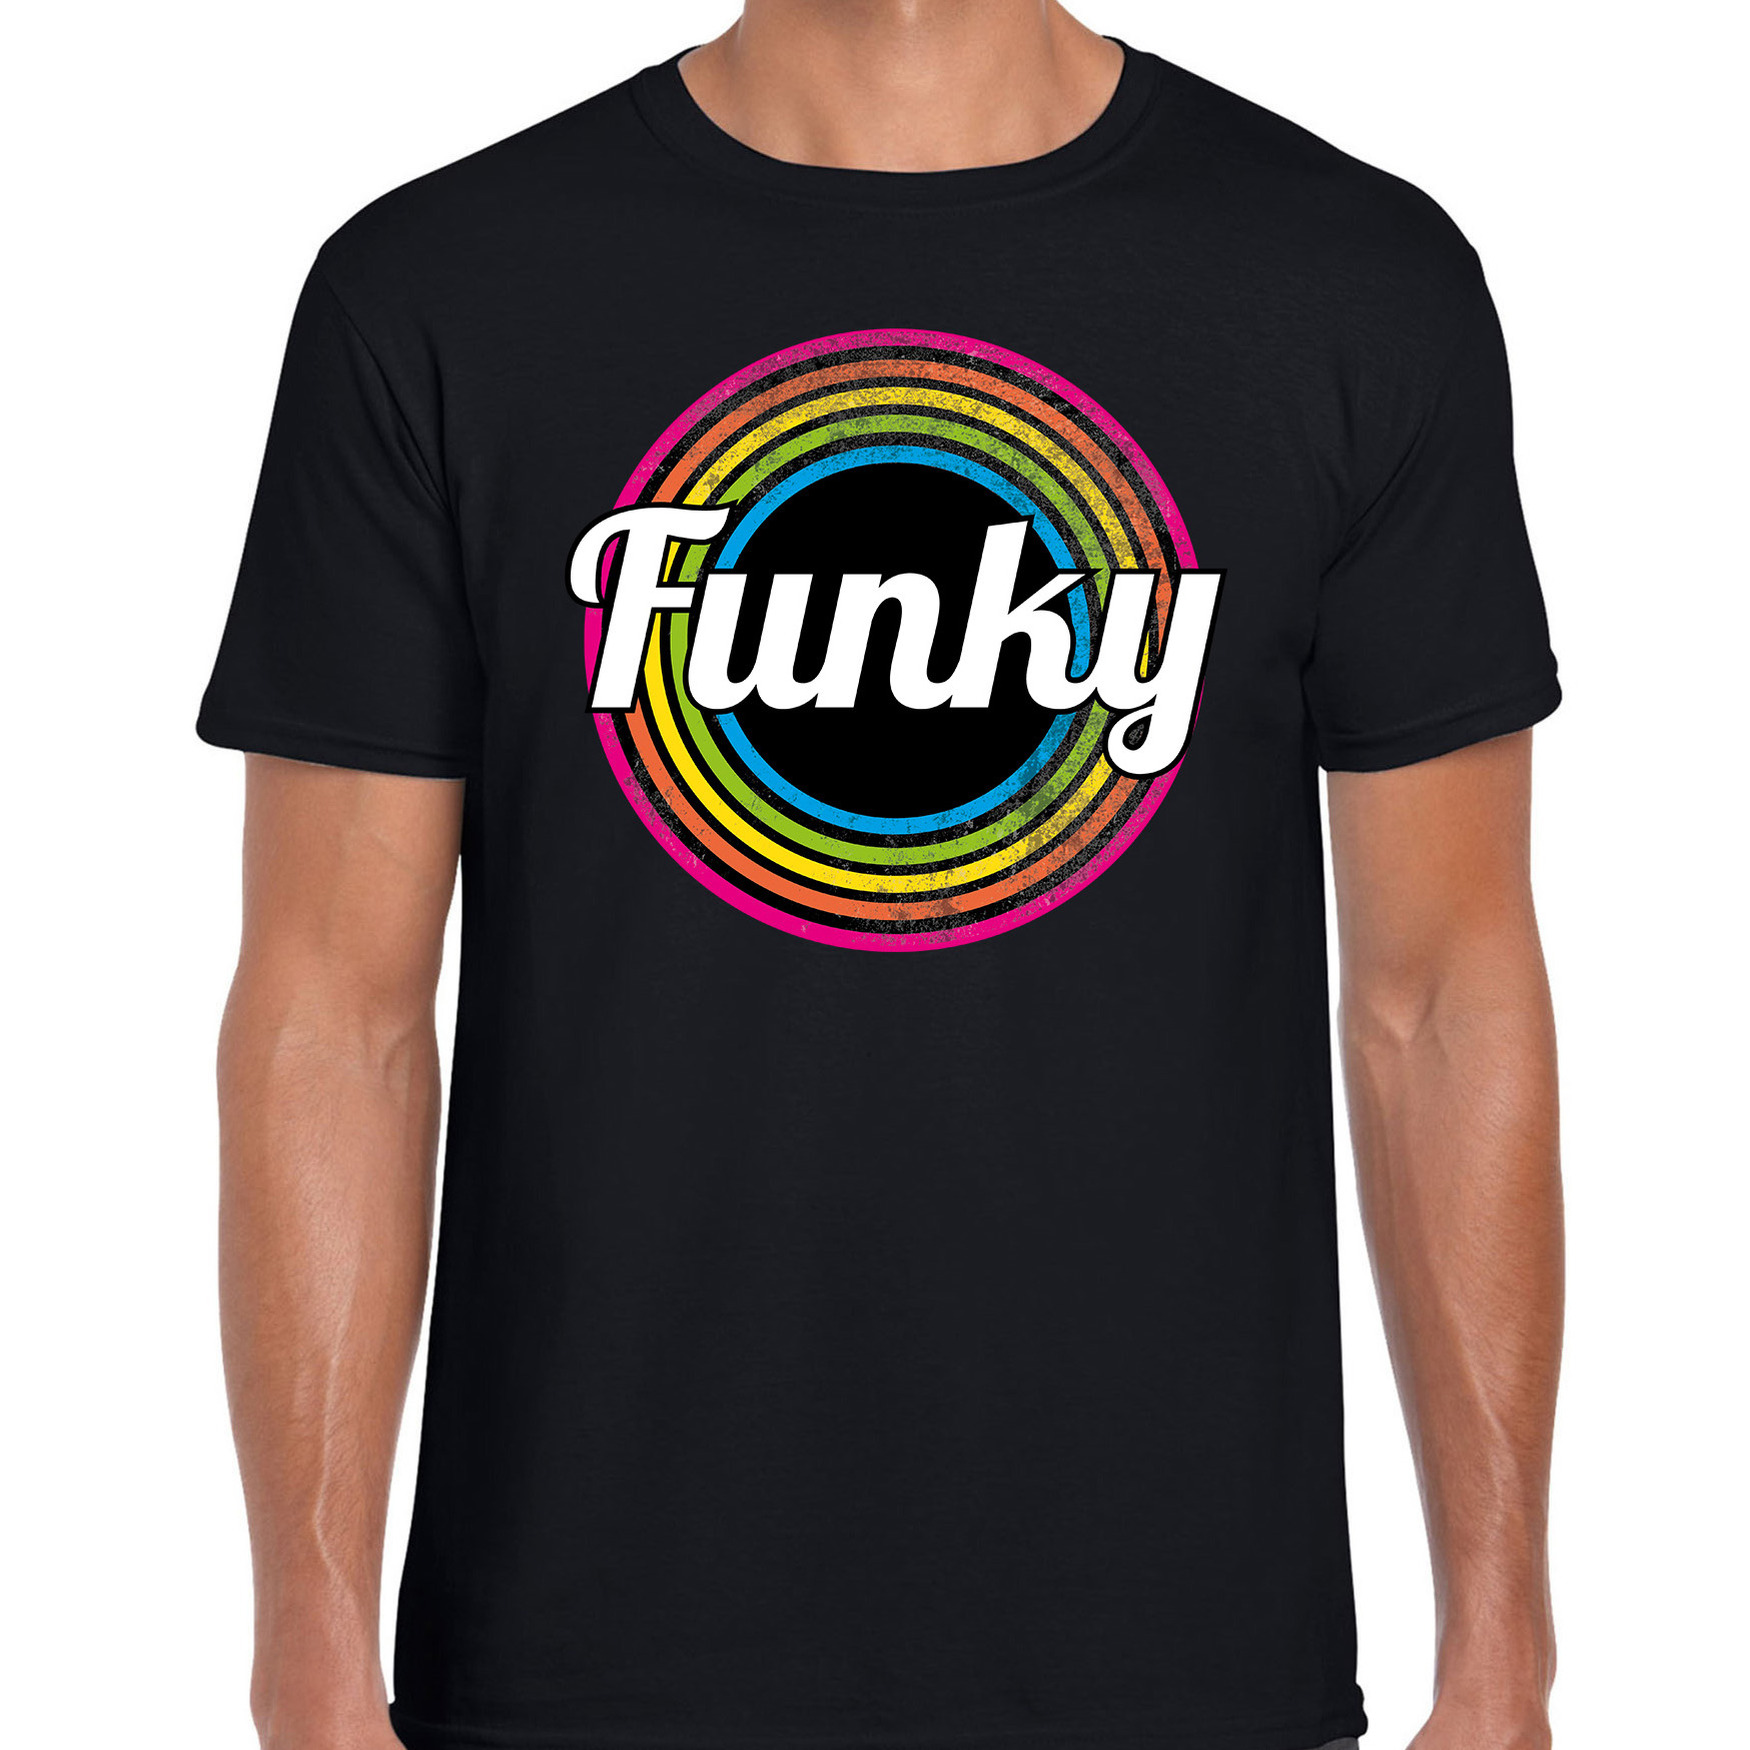 Funky verkleed t-shirt zwart voor heren 70s, 80s party verkleed outfit